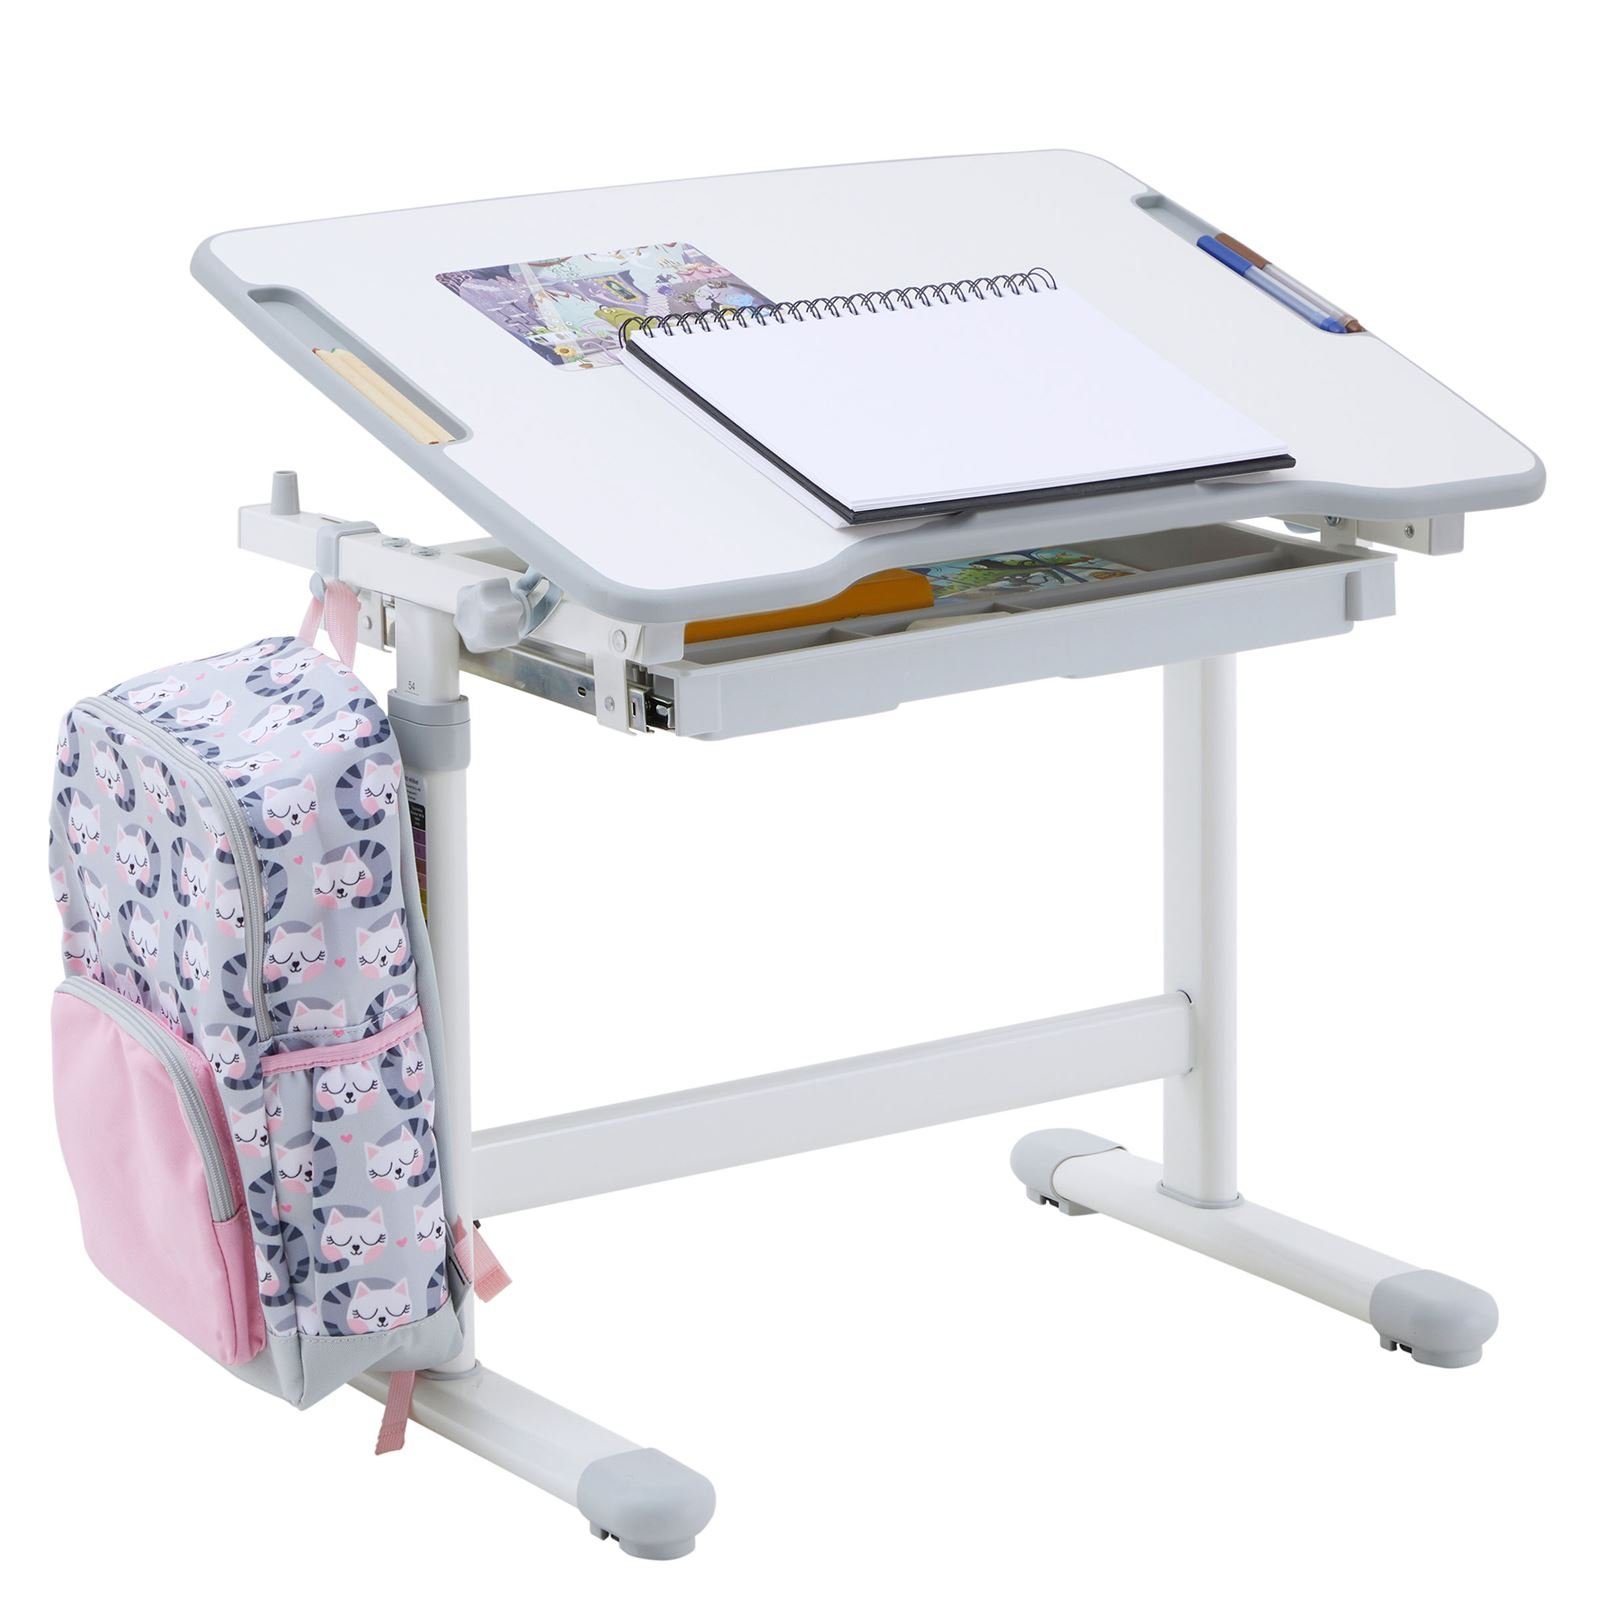 CARO-Möbel Kinderschreibtisch Schreibtisch höhenverstellbar neigbar VITA, Kinderschreibtisch weiß/grau Kin